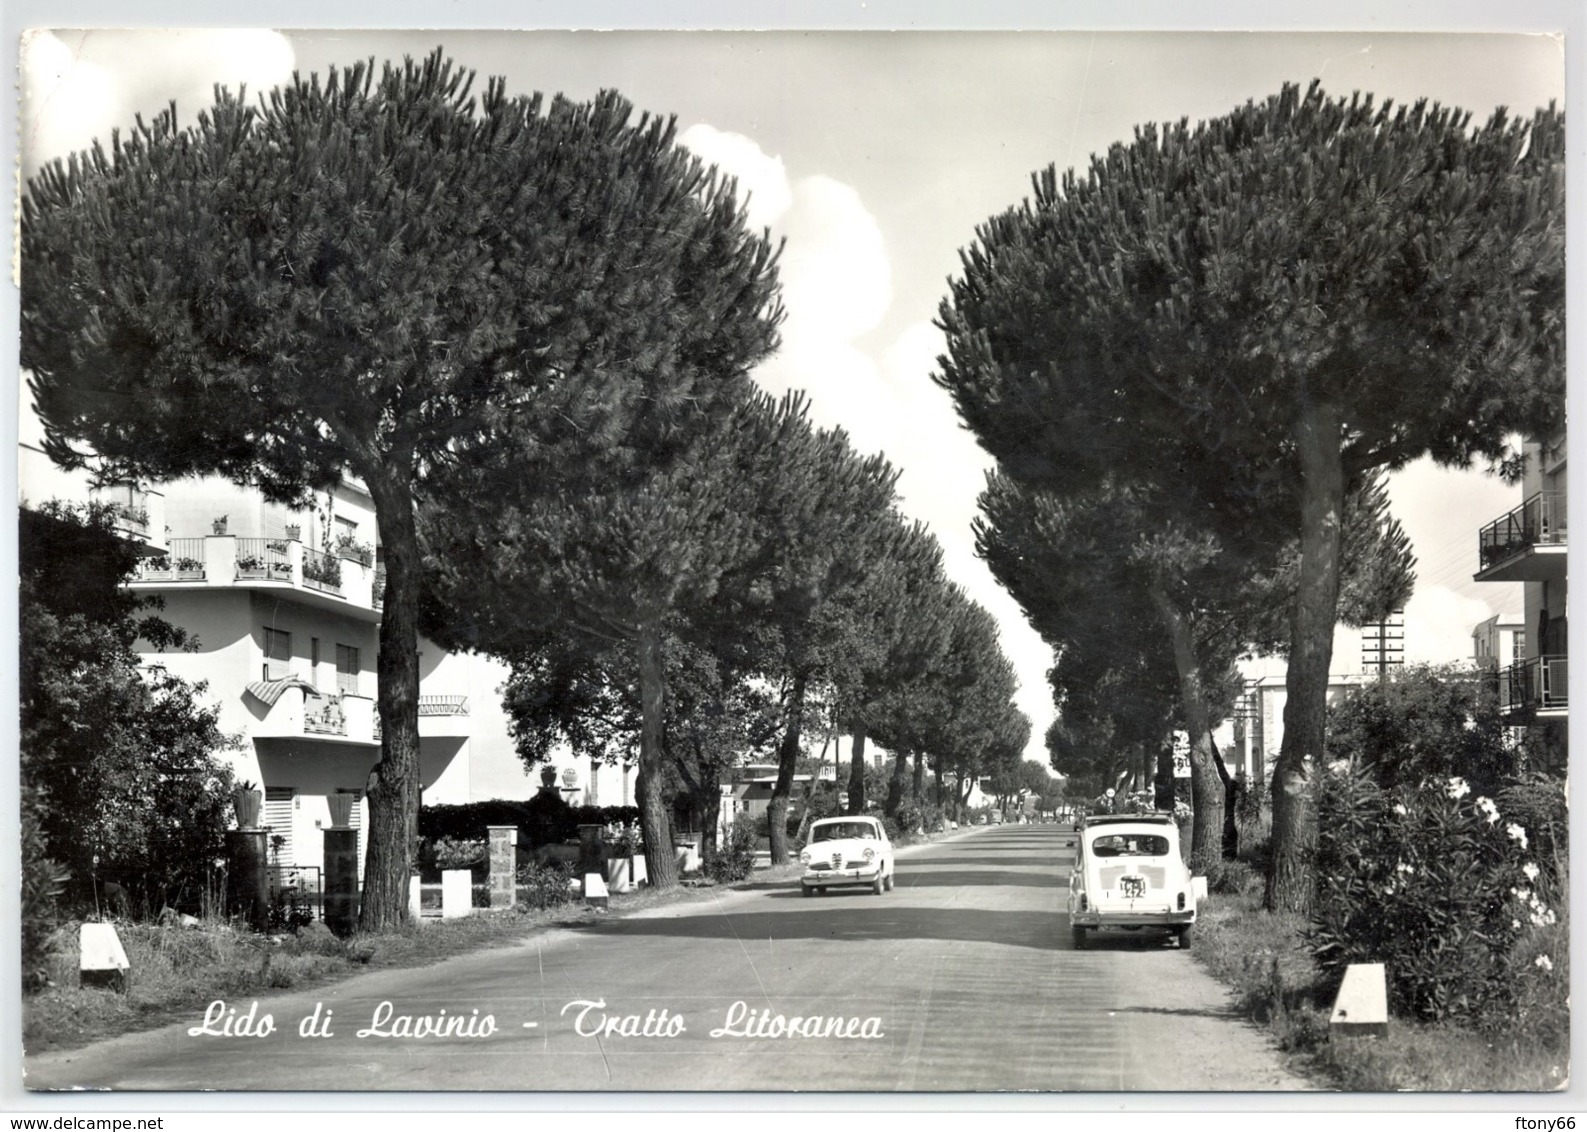 MA19 Cartolina Lido Di Lavinio - Tratto Litoranea Anzio (Roma) FG VG 1969 - Panoramic Views